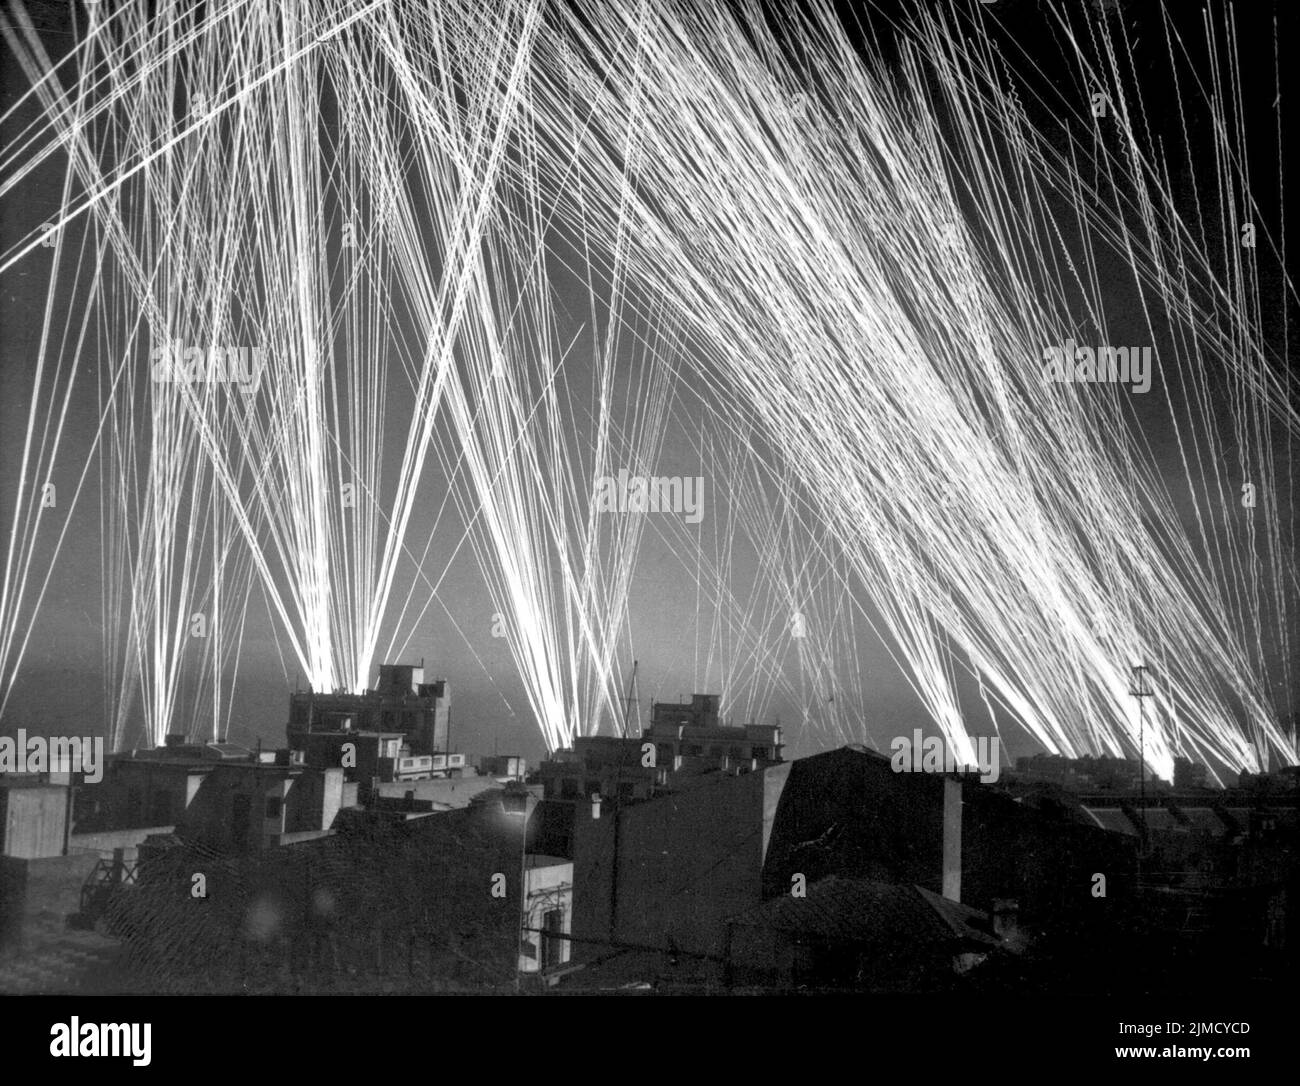 Tir anti-aérien lors d'un raid aérien des Nazis à Alger, Algérie française. Vers 1943 Banque D'Images